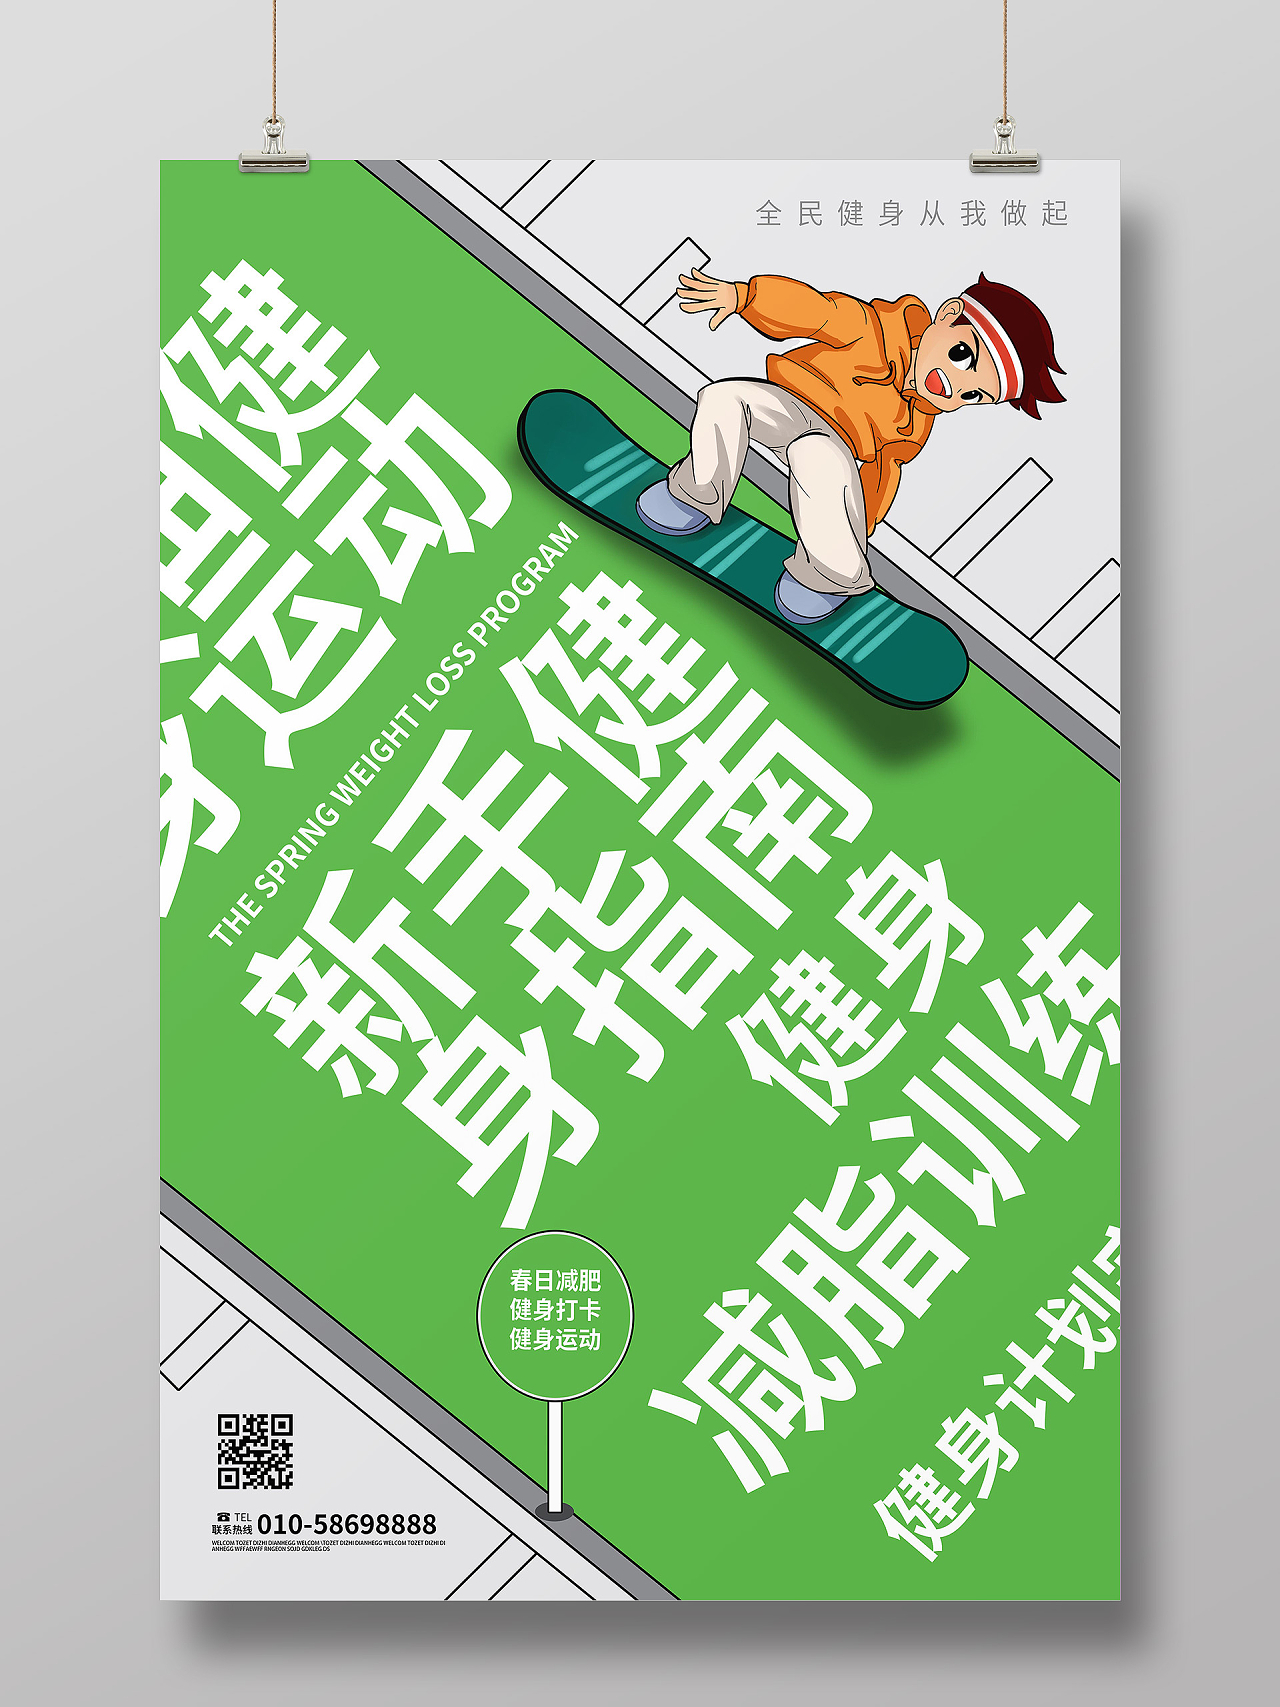 绿色创意卡通风格运动健身宣传海报设计健身海报